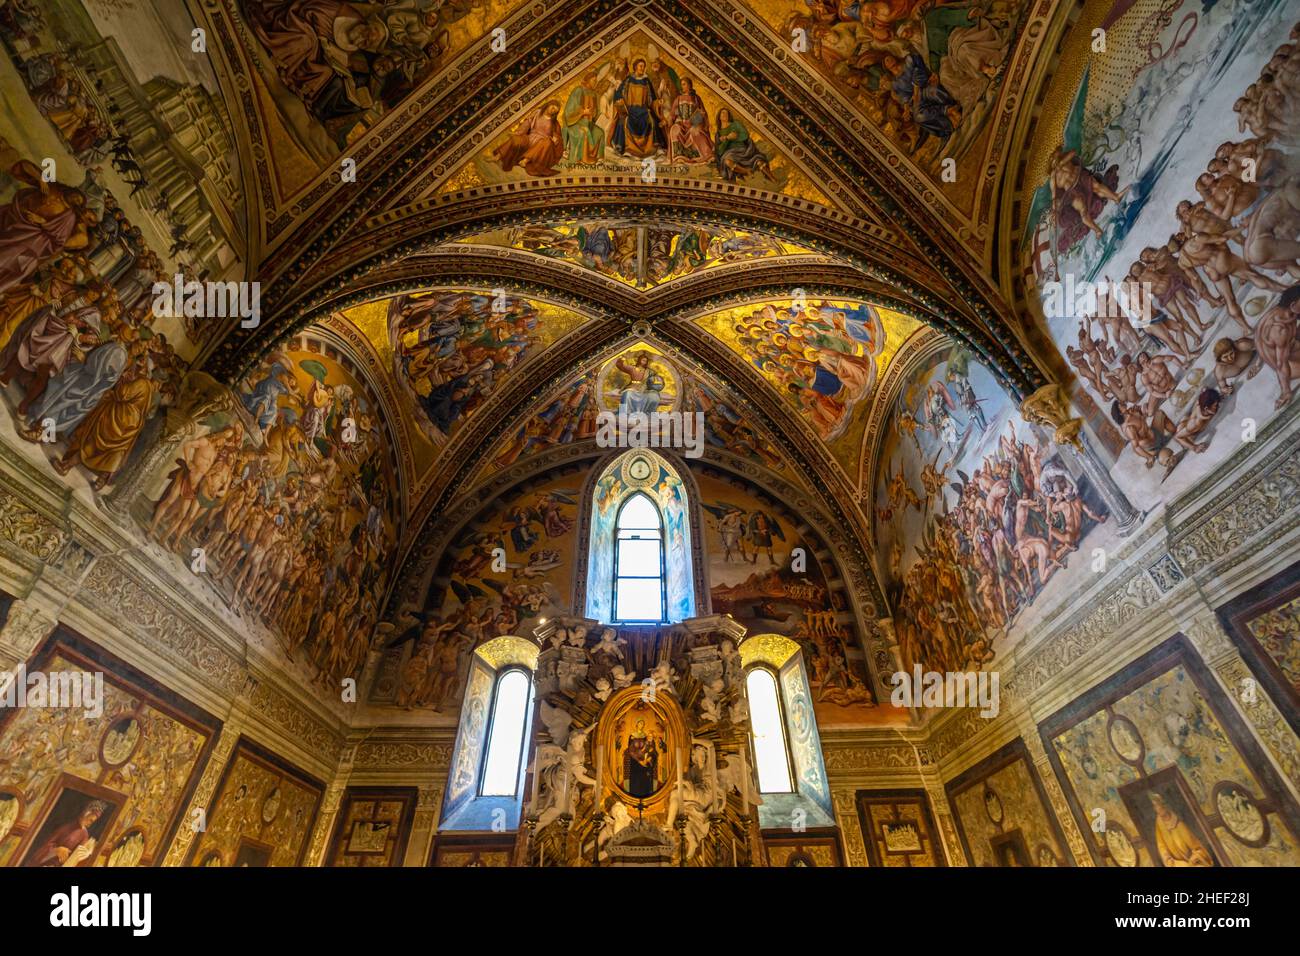 La cappella dedicata a San Brizio all'interno della cattedrale di Orvieto, decorata con affreschi medievali, Umbria, Italia Foto Stock